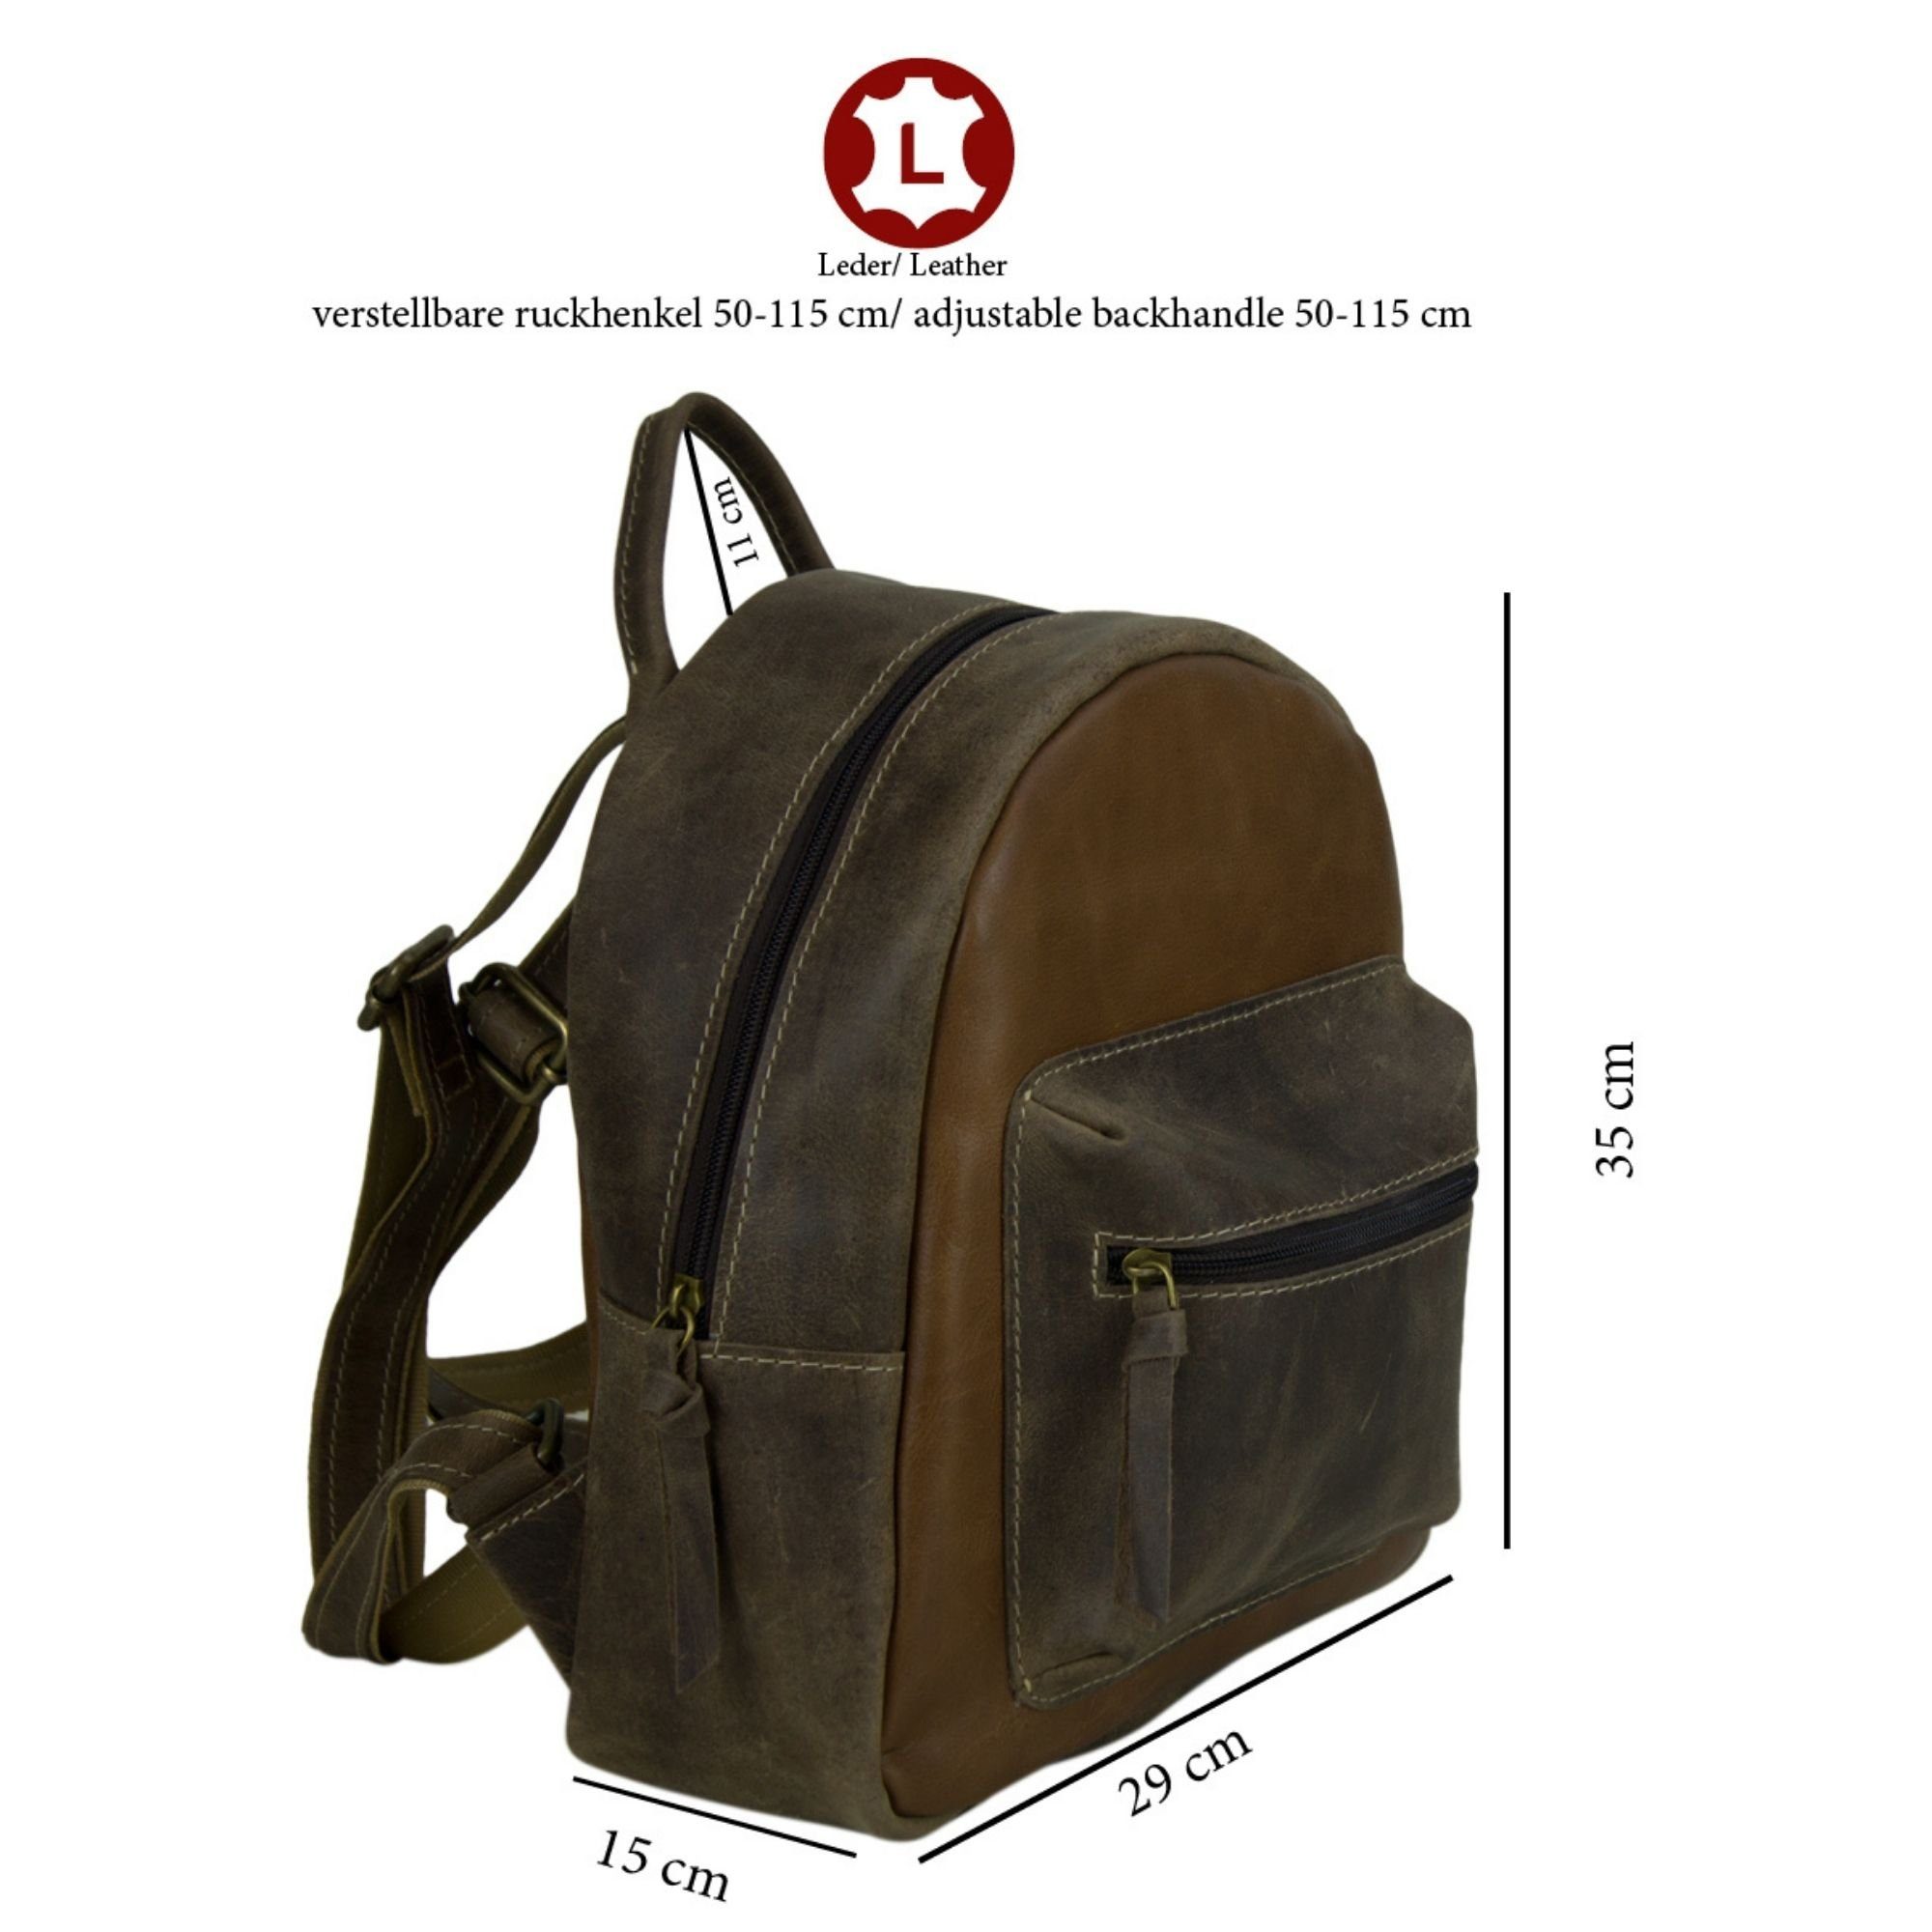 Ihn, Retro echte Leder Cityrucksack Daypack Sie/ Still. und Stone Schöne für Sunsa Rucksack, Backpack Canvas Tasche braun/D.braun aus Leder wash in